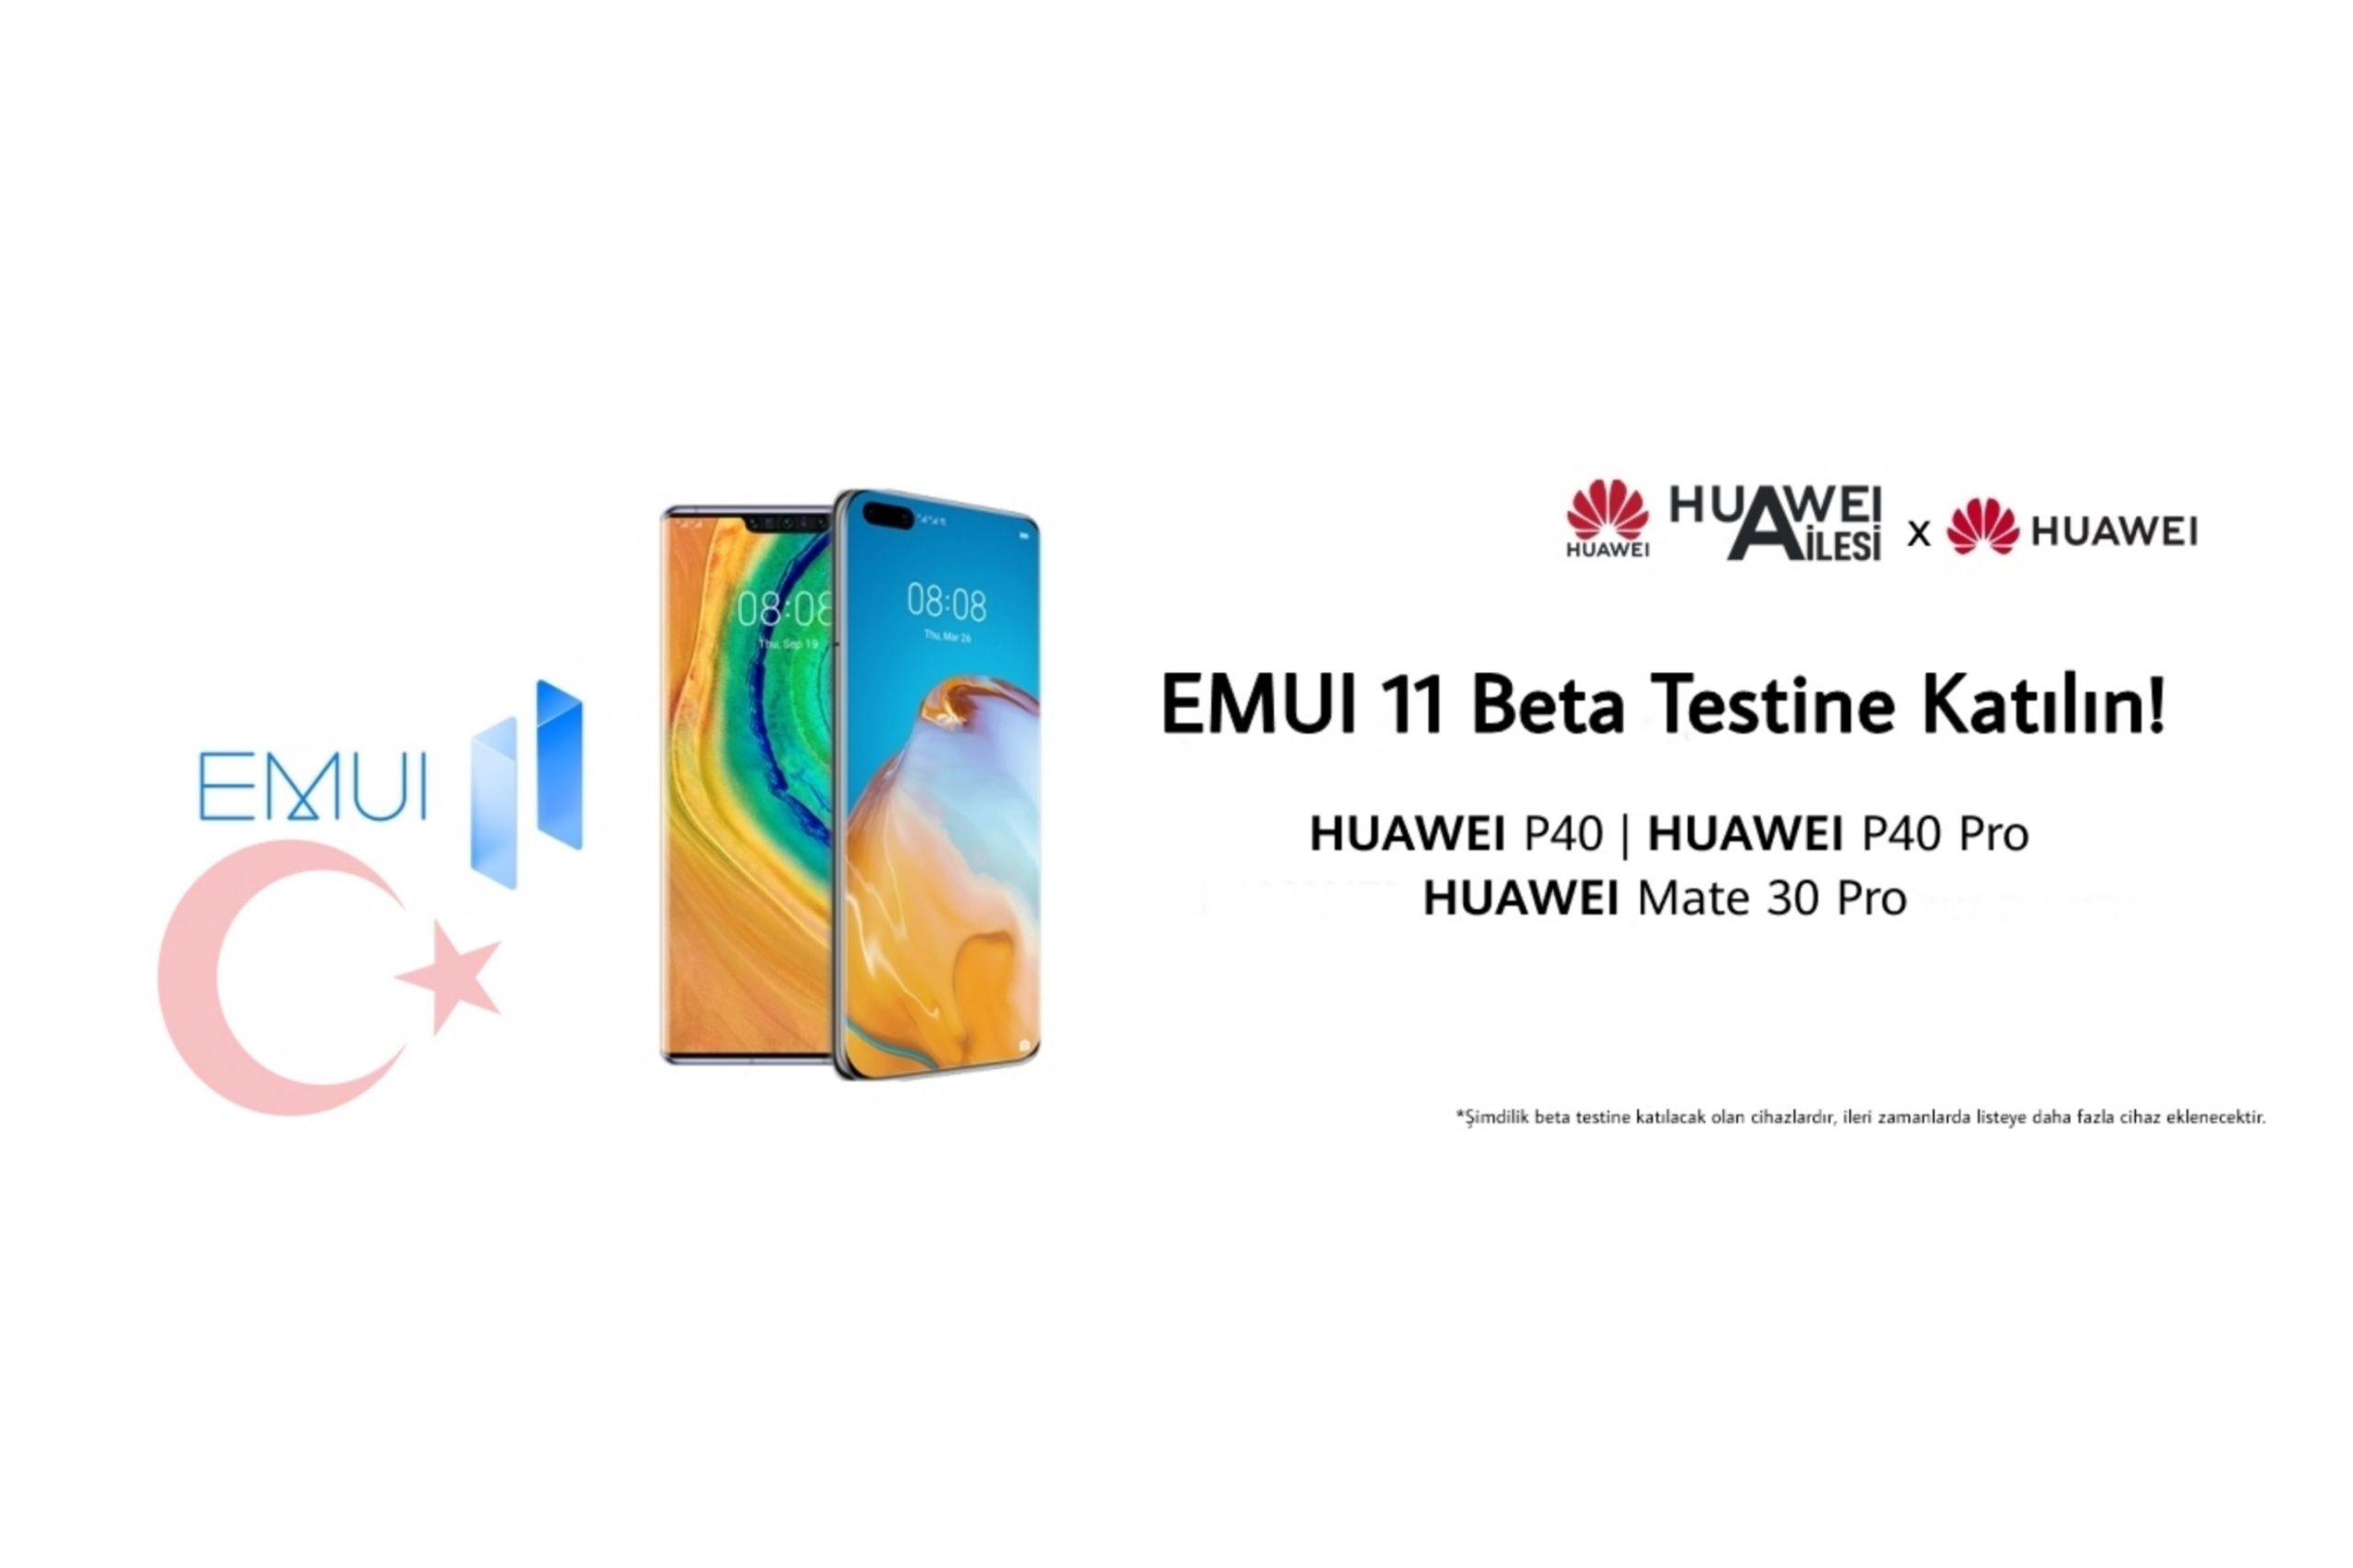 EMUI 11 Beta Süreci Türkiye için Başladı!